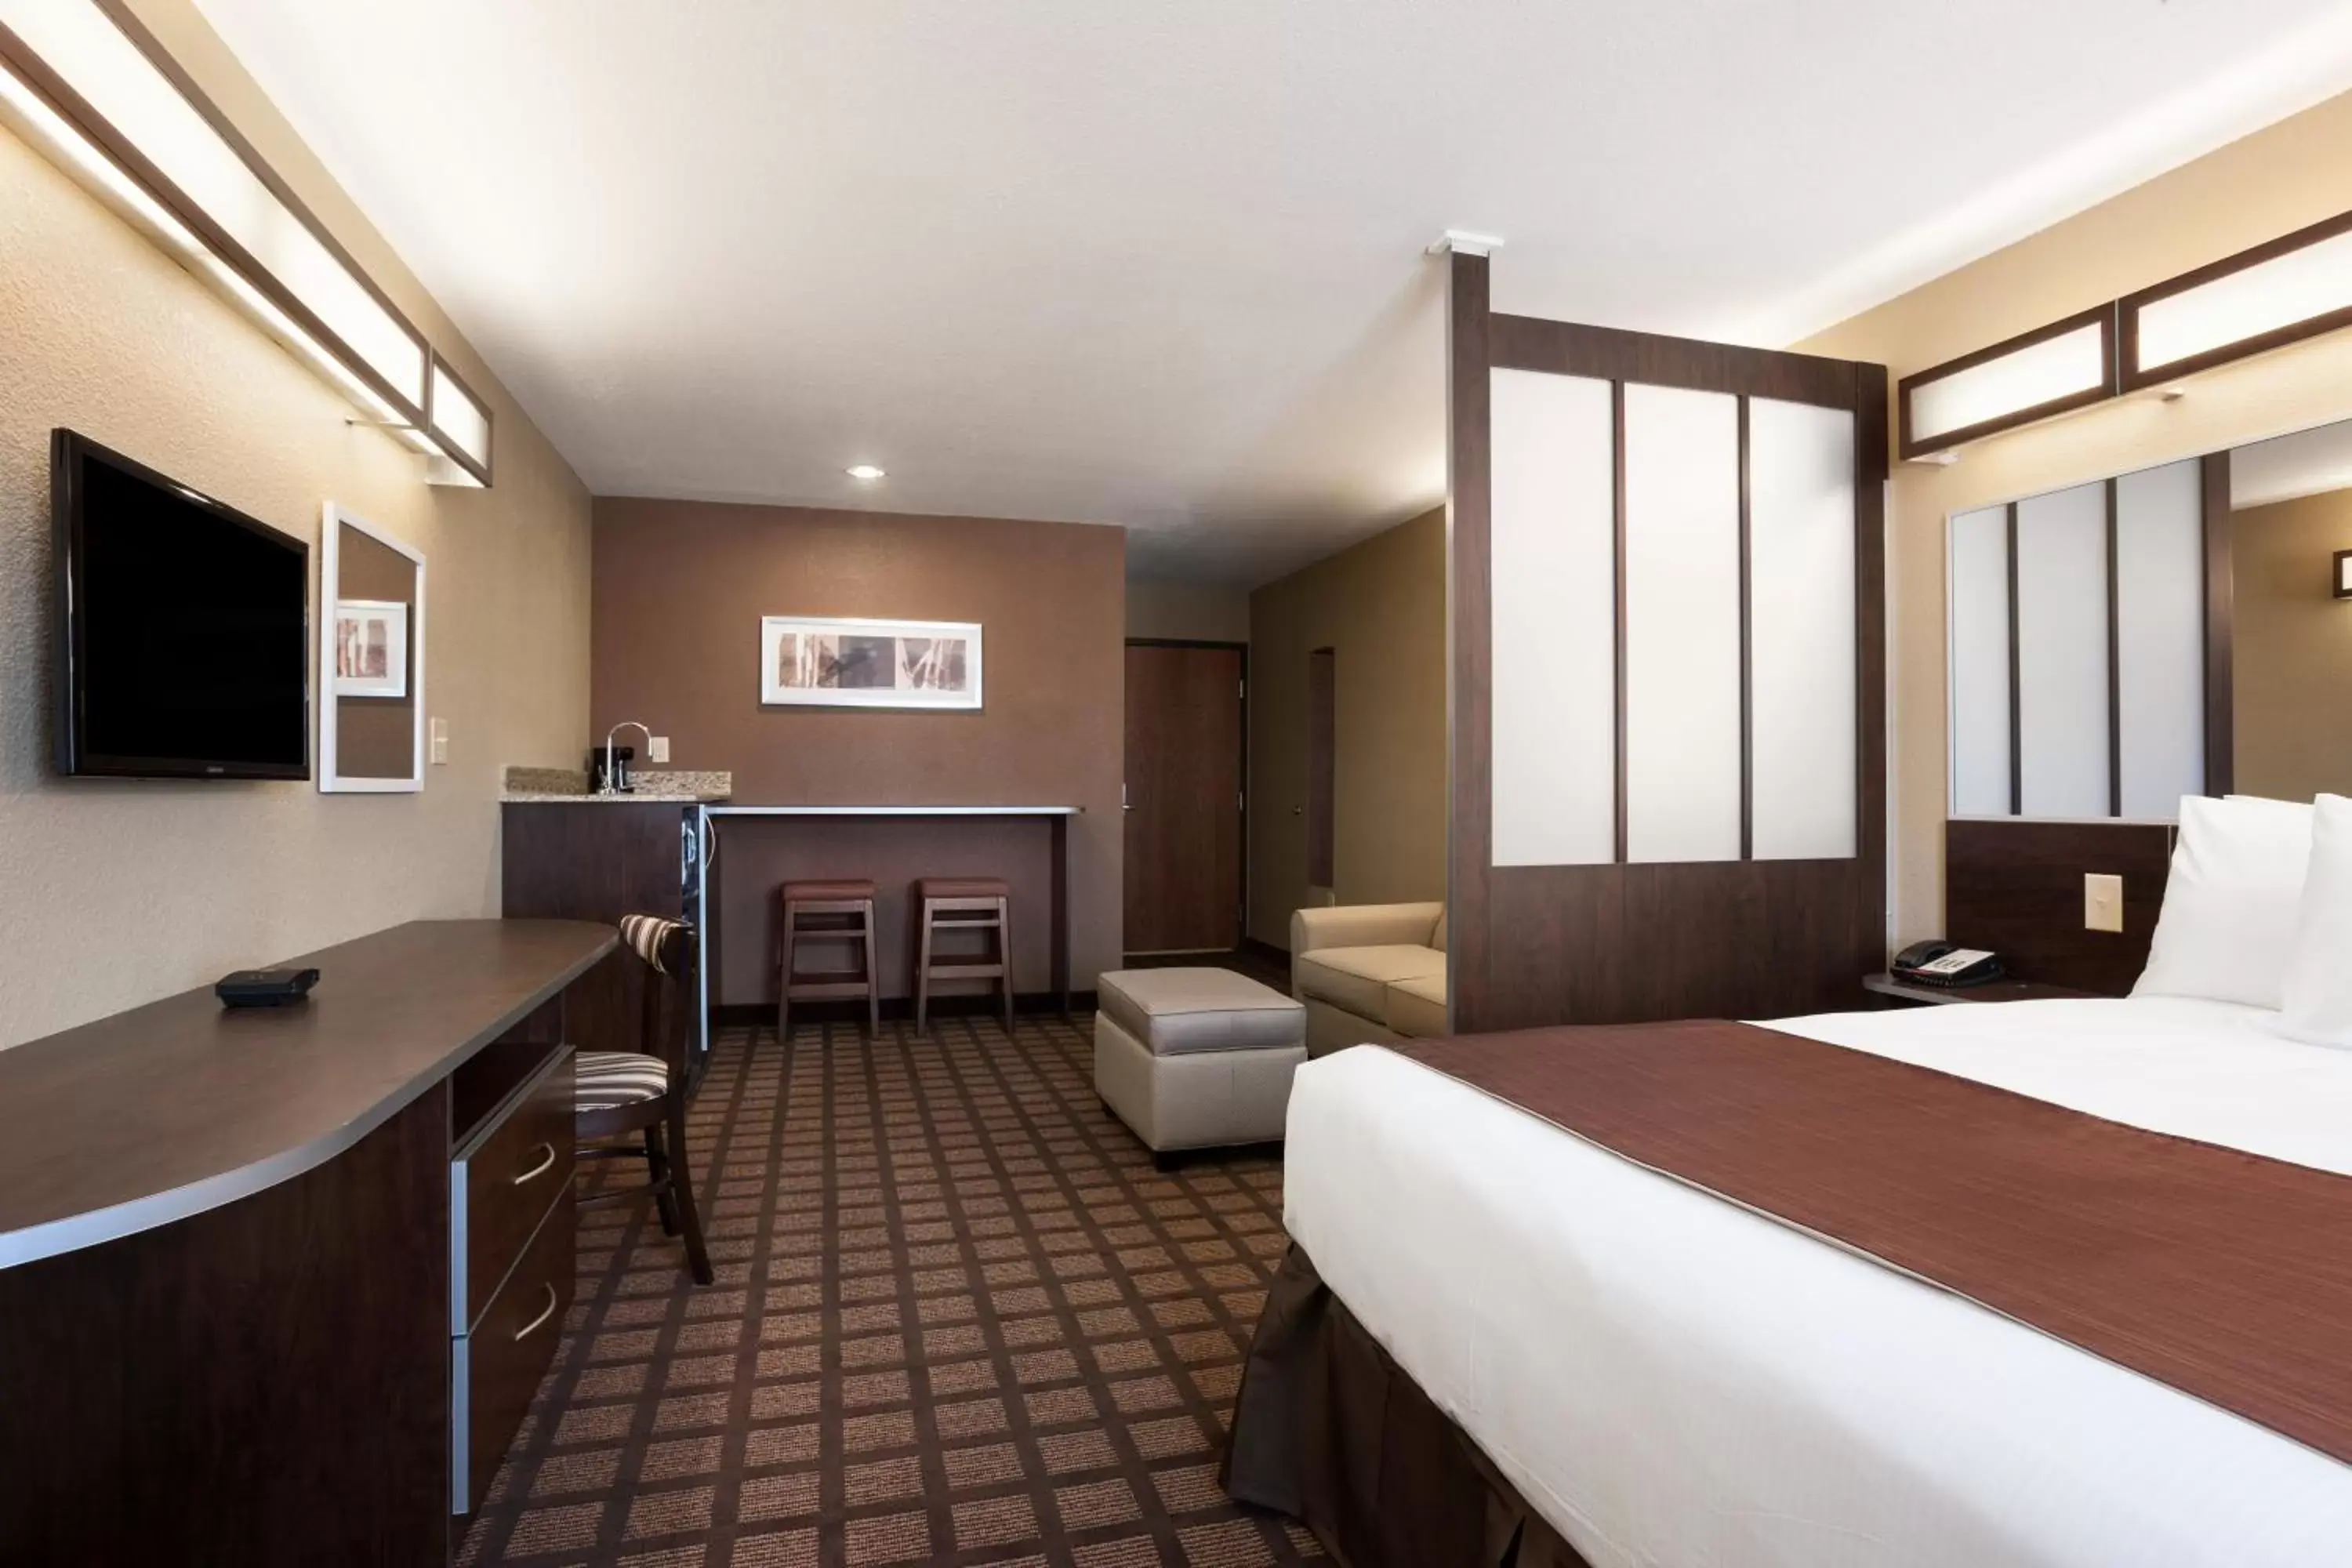 Bedroom in Microtel Inn & Suites Kenedy